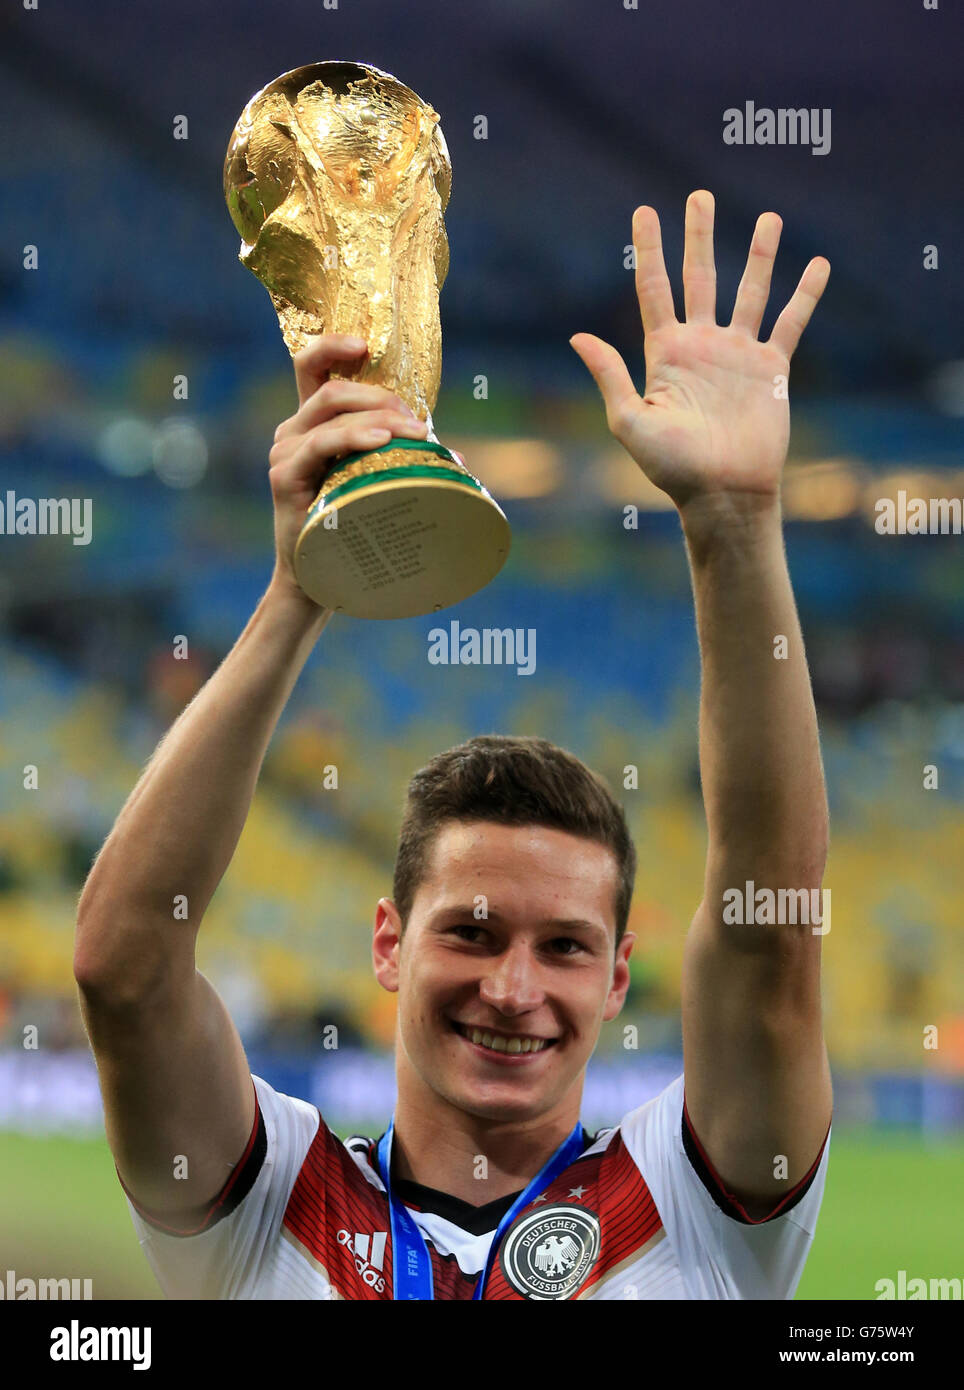 Football - coupe du monde de la FIFA 2014 - finale - Allemagne / Argentine - Estadio do Maracana.Julian Draxler, en Allemagne, célèbre le trophée de la coupe du monde de la FIFA Banque D'Images